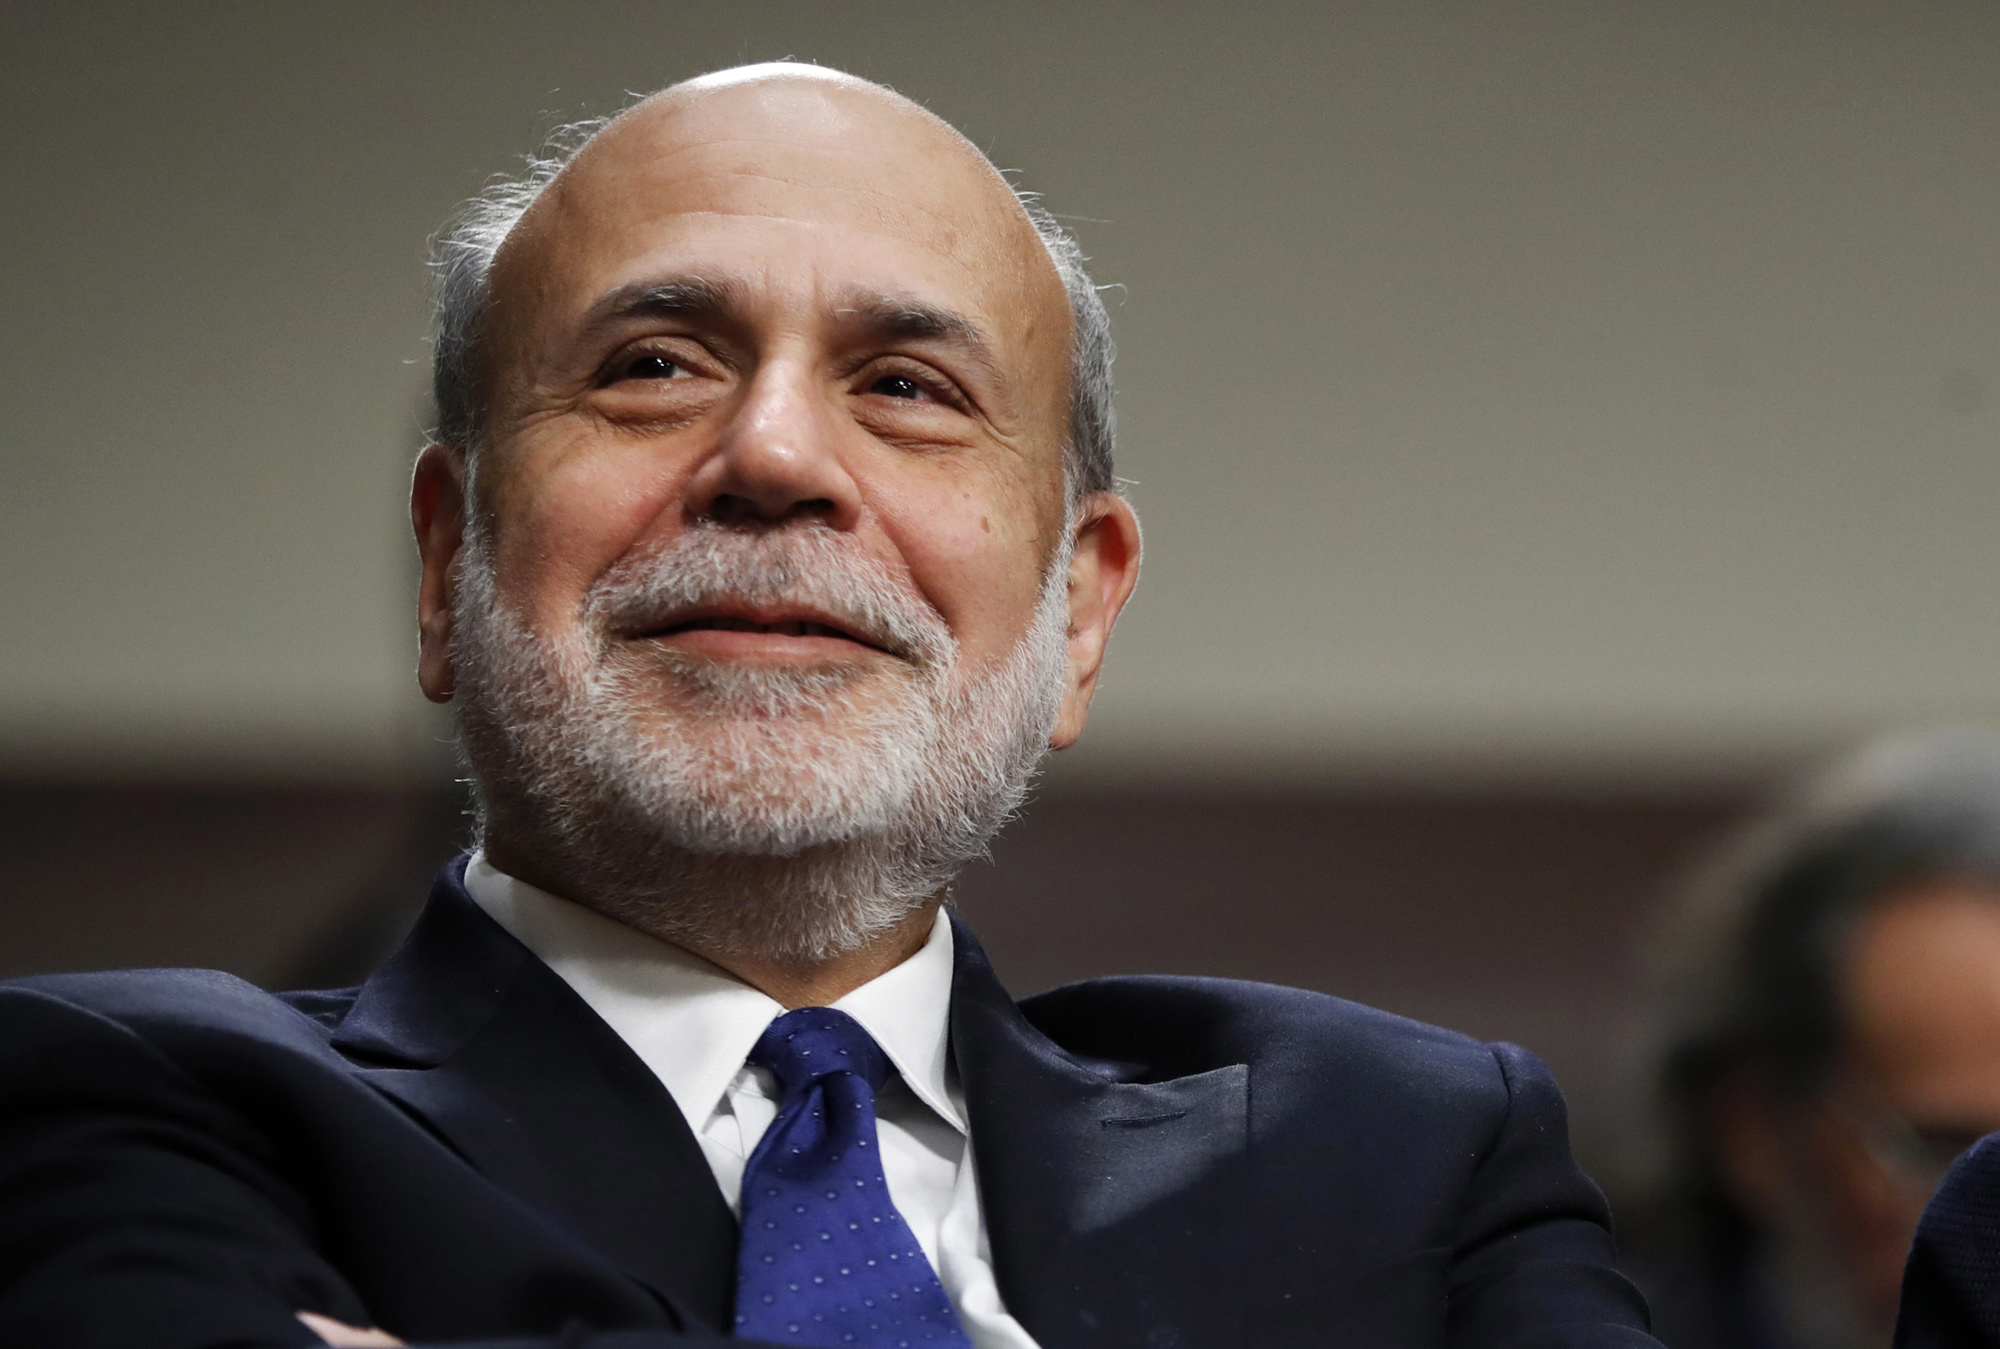 Había grandes esperanzas de que Ben Bernanke inspirara cambios significativos en el Banco de Inglaterra, pero parece que se han evaporado